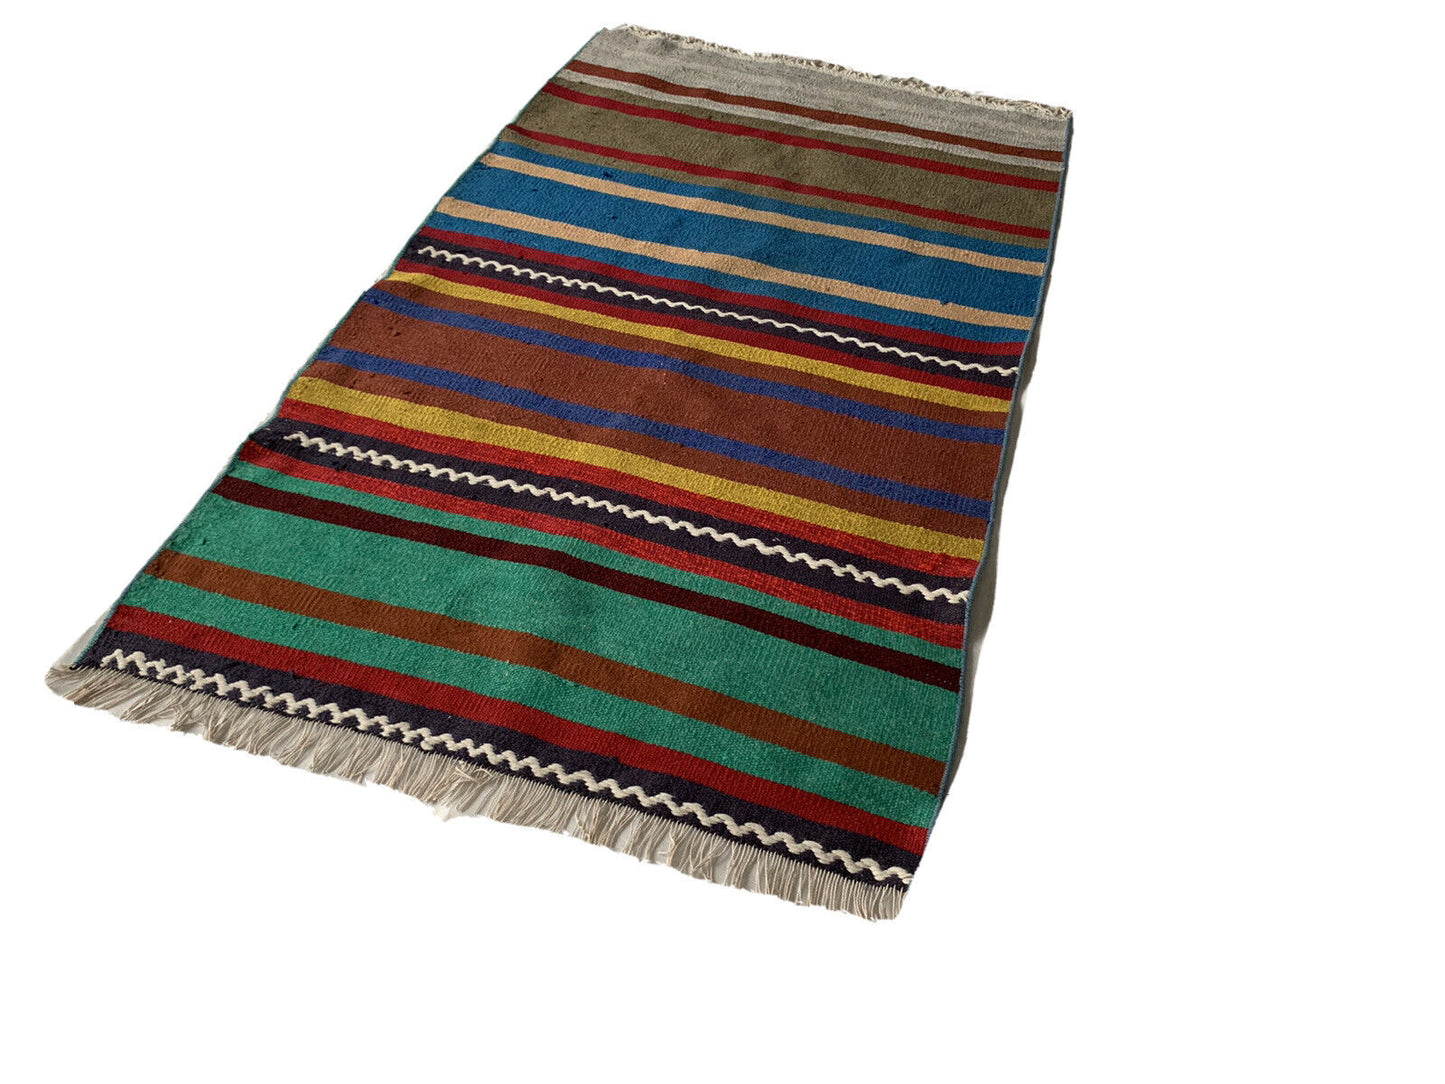 Traditional Turkish Kilim Carpet, Vintage Wool Country Kilim 125x80 Cm